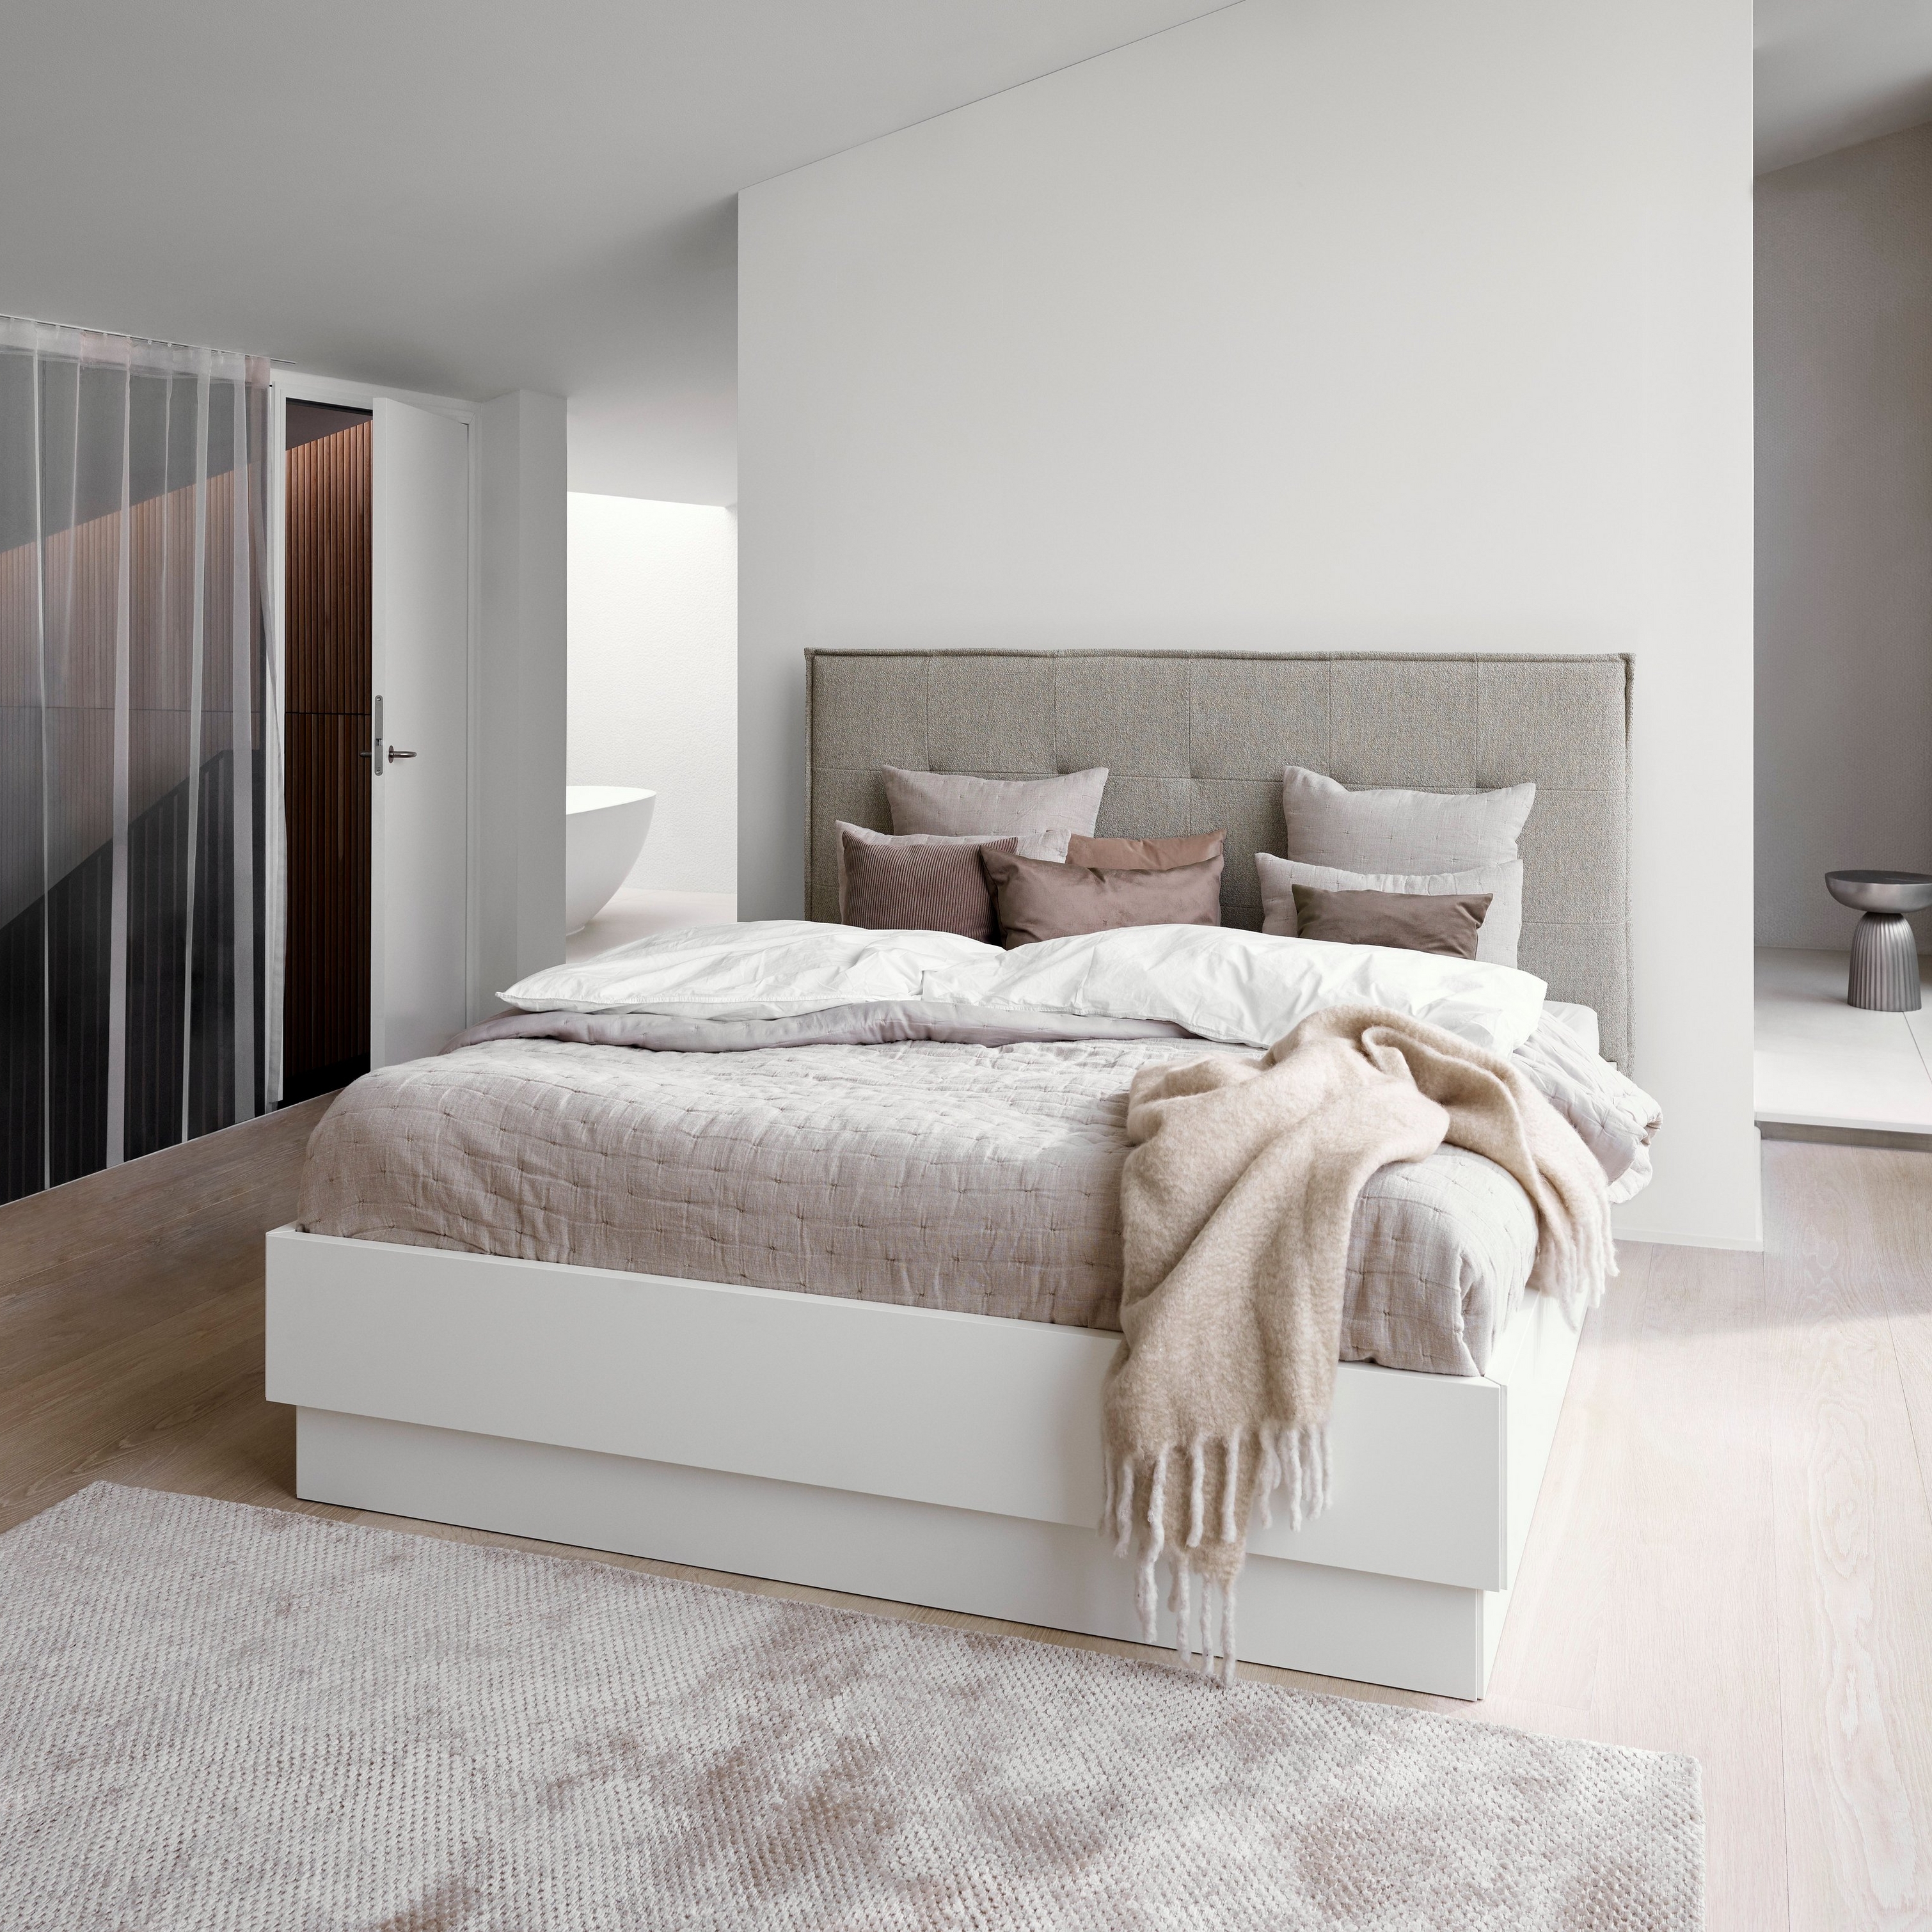 Quarto minimalista com uma cama estofada cinzenta, roupa de cama branca e uma manta bege texturada.